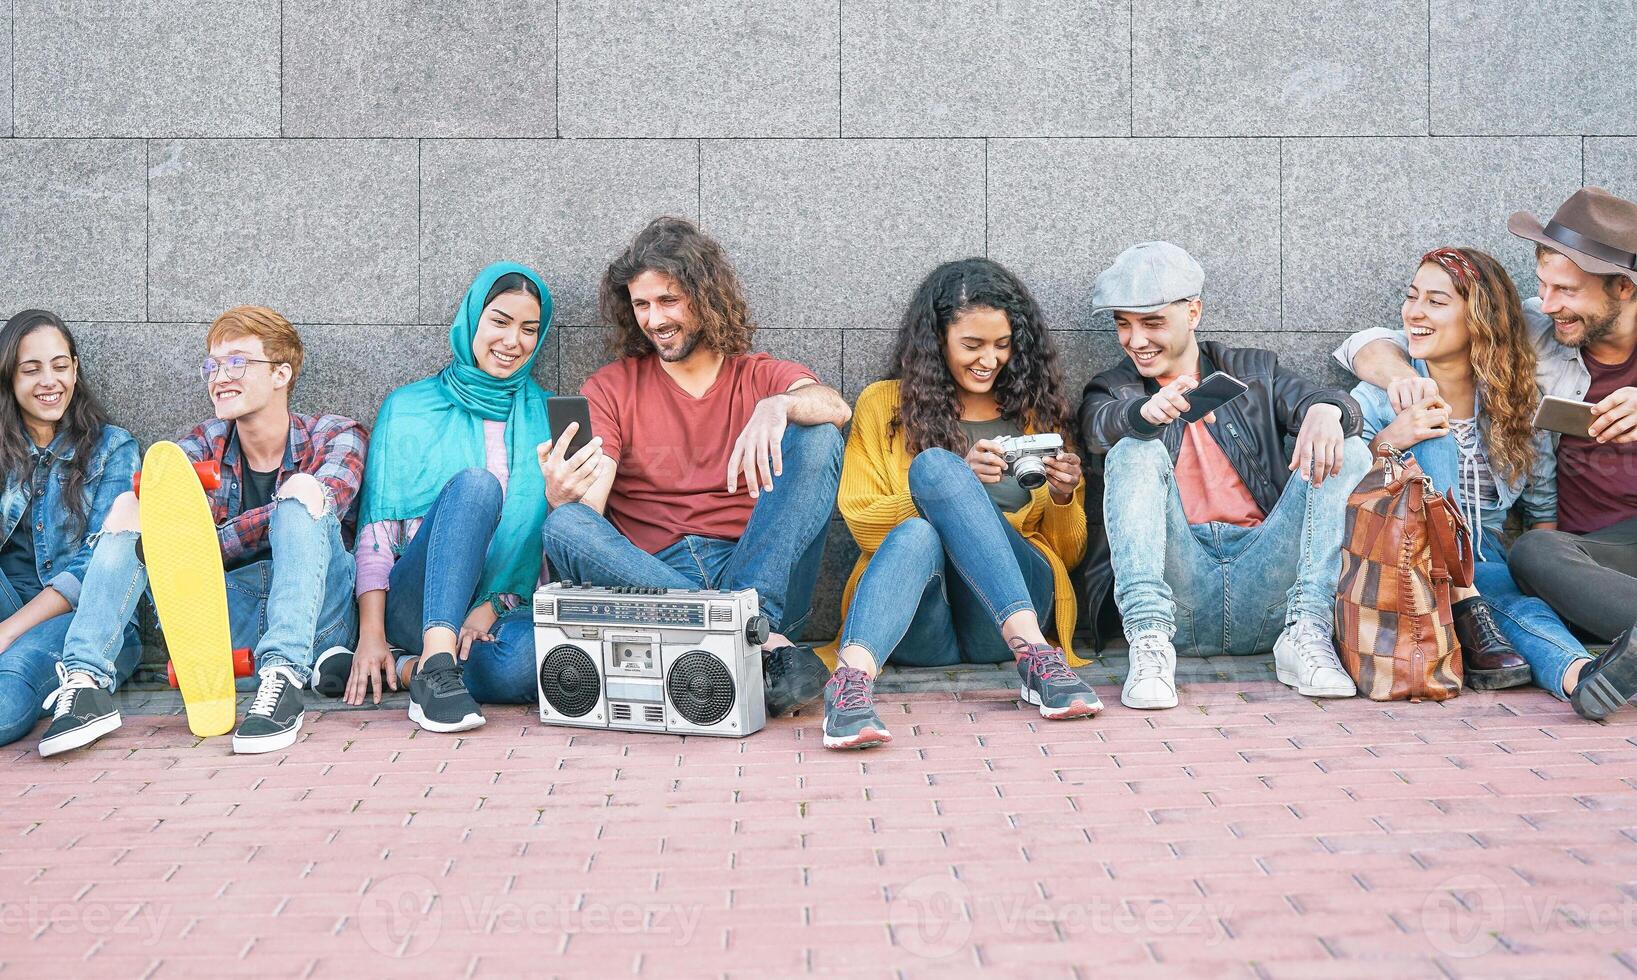 grupp av olika vänner har roligt utomhus- - tusenåriga ung människor använder sig av mobil telefoner tar Foto och lyssnande musik med årgång stereo - generation z, social media och ungdom livsstil begrepp